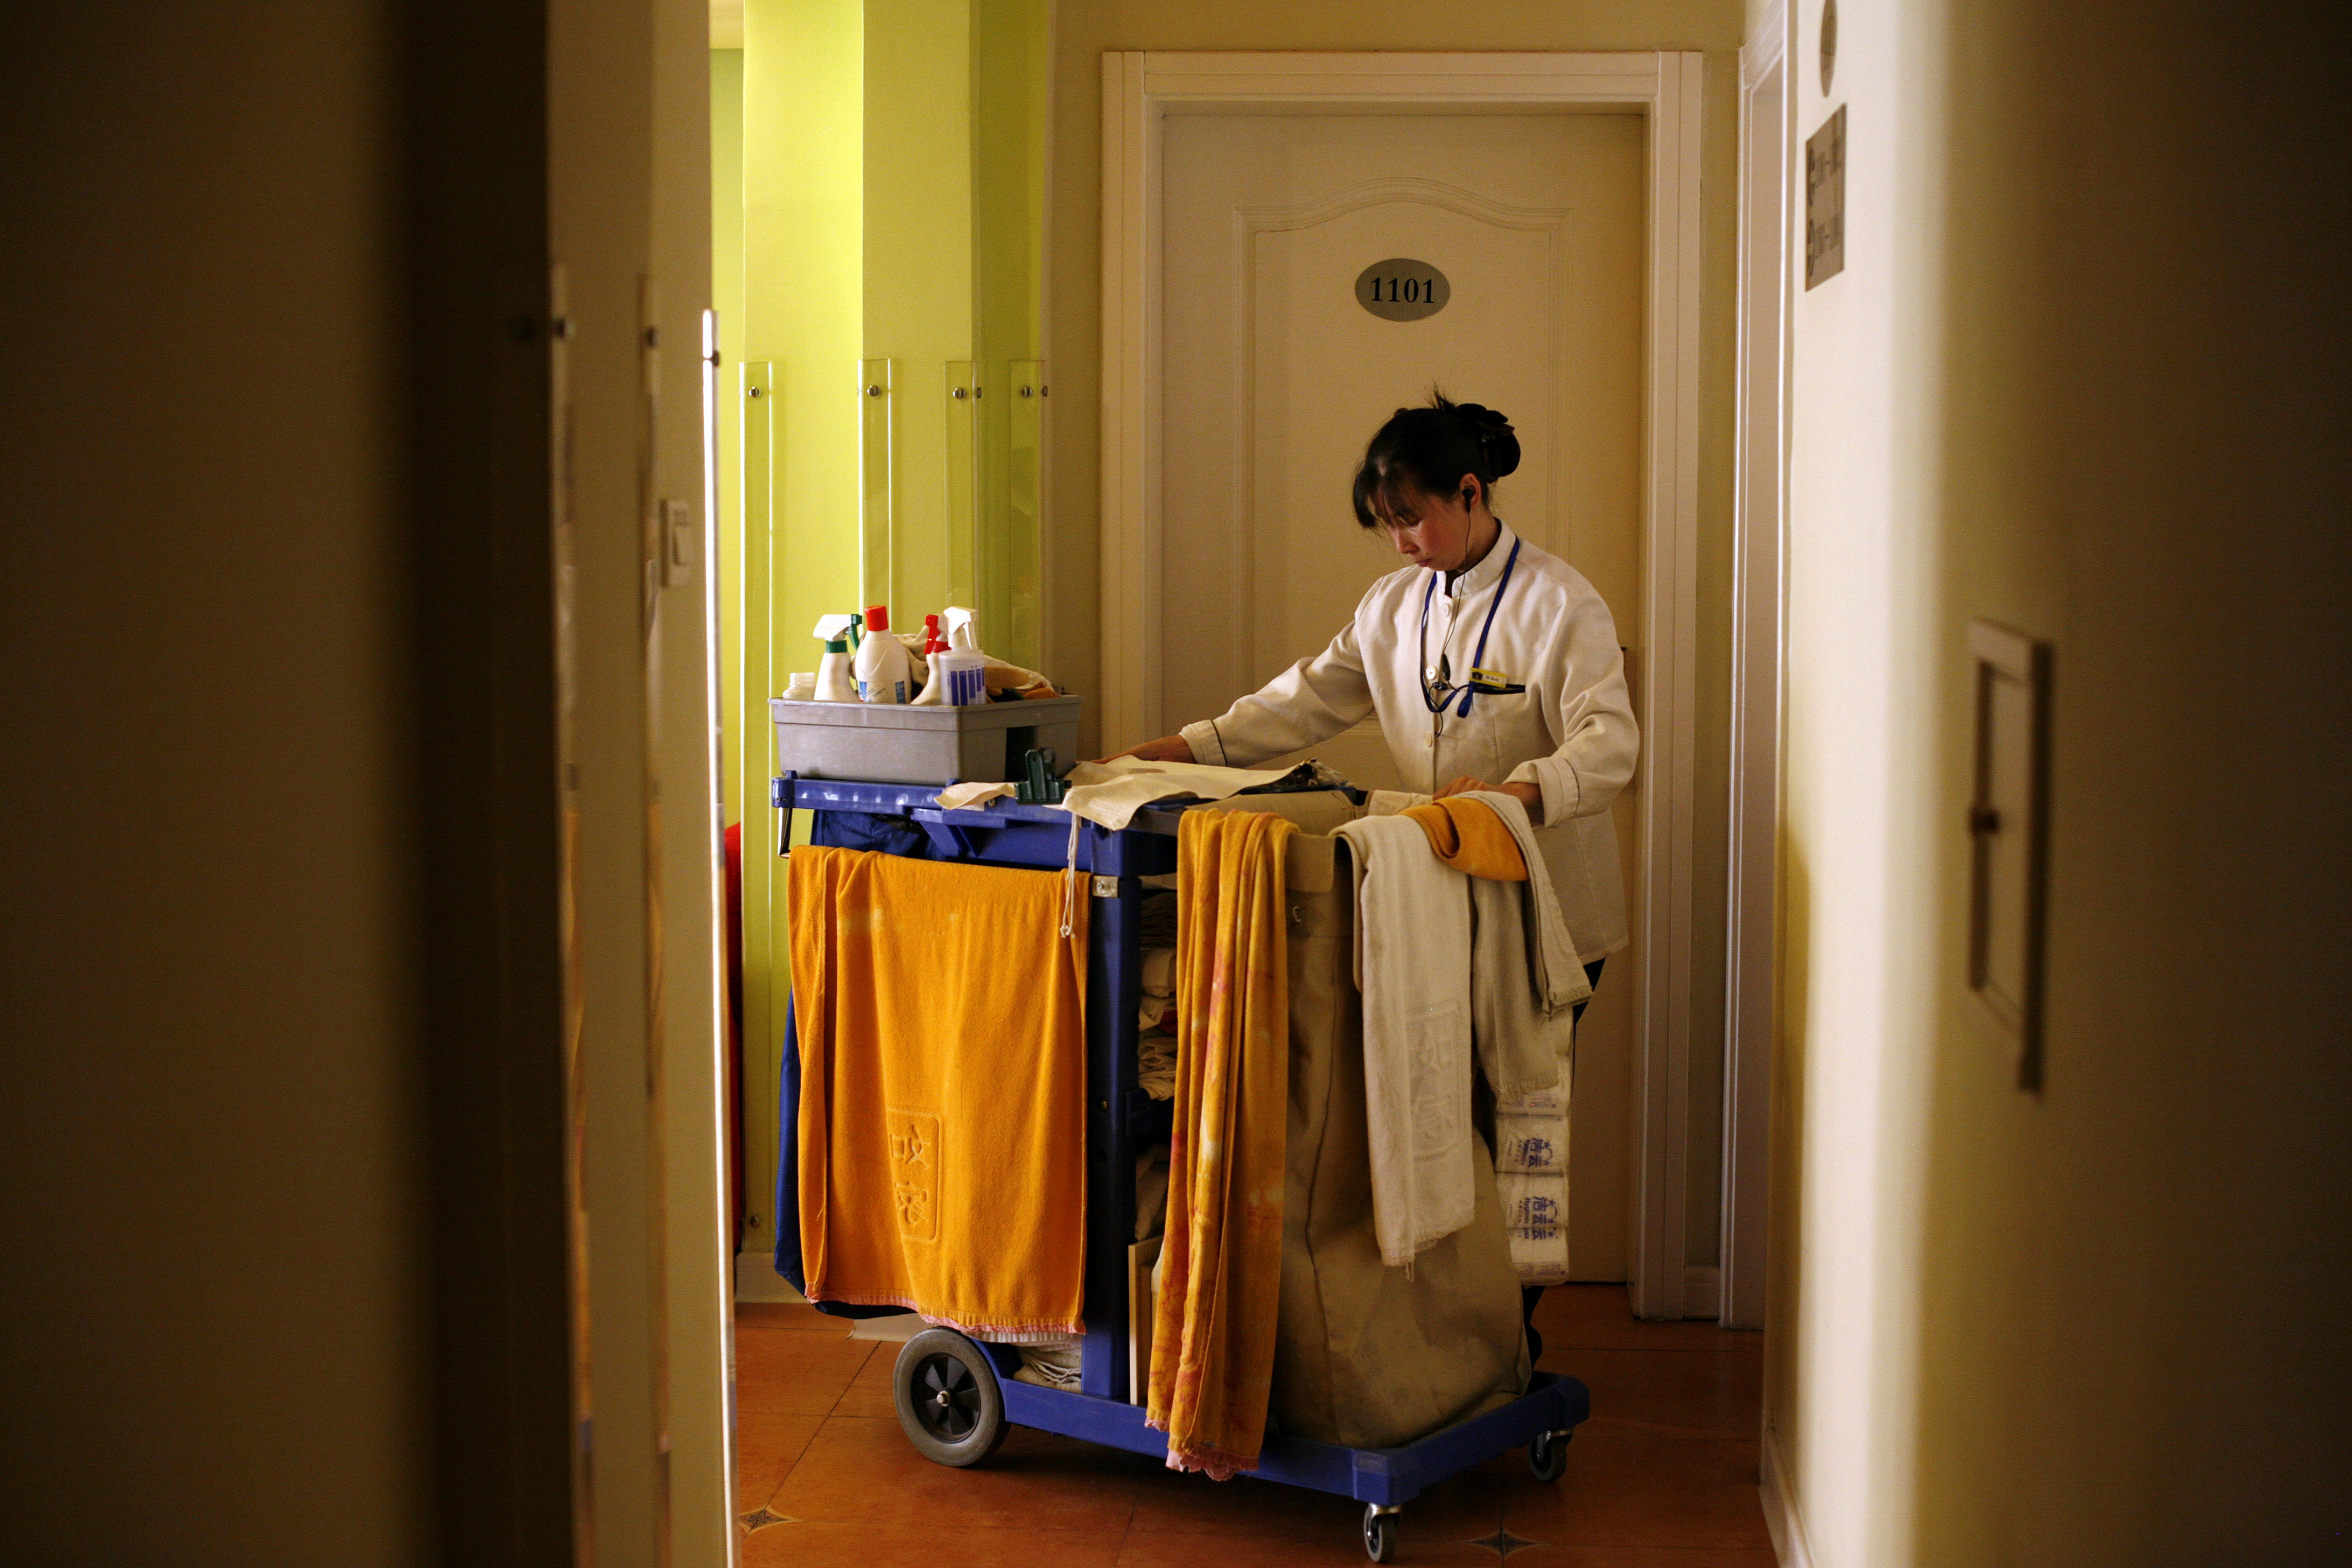 Ein Hotelmädchen betritt ein Zimmer mit einem Wagen voller Reinigungsmittel.